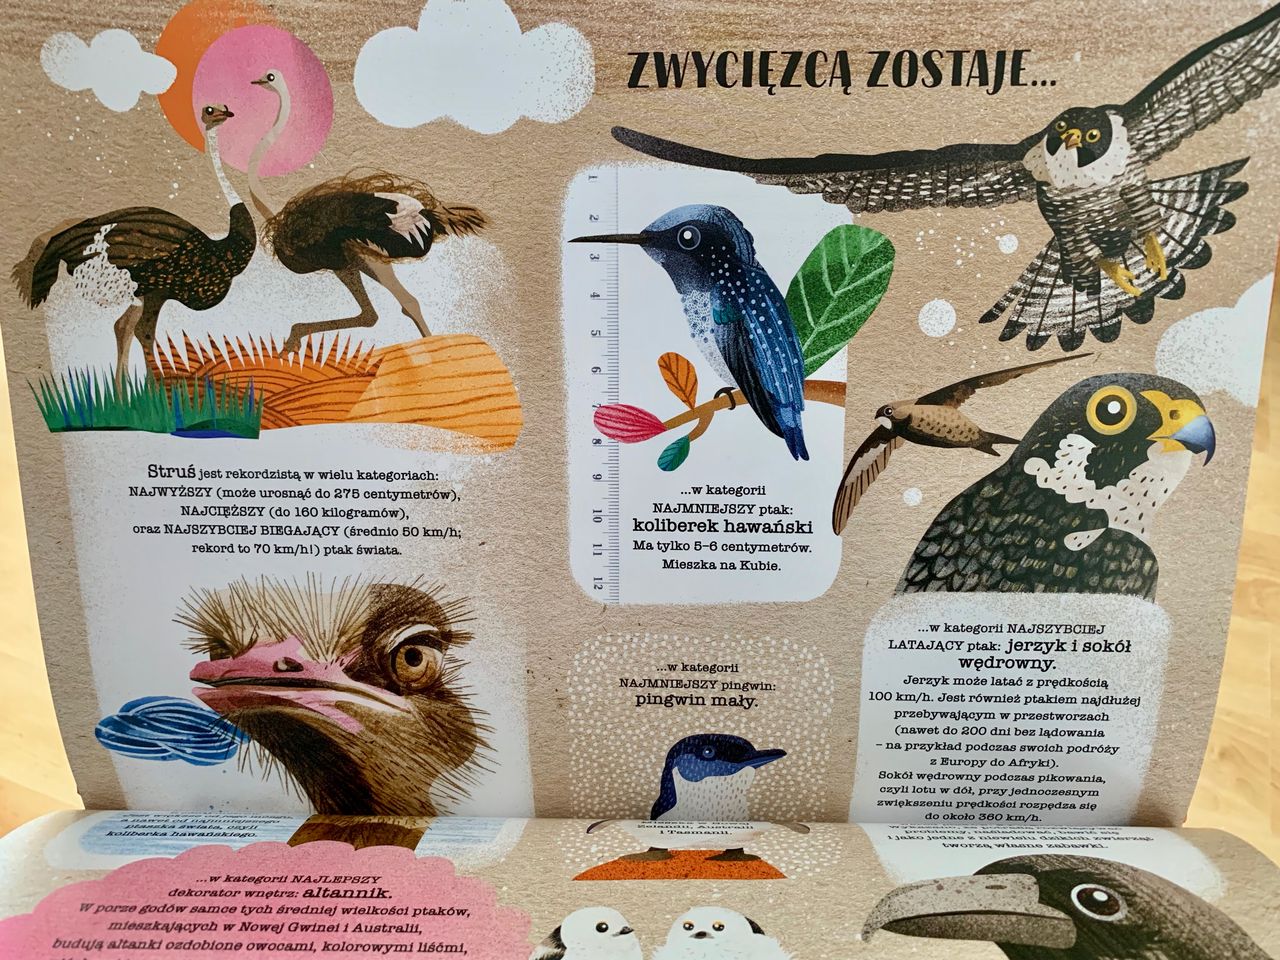 Ptasie opowieści – 2 tytuły dla pasjonatów ornitologii